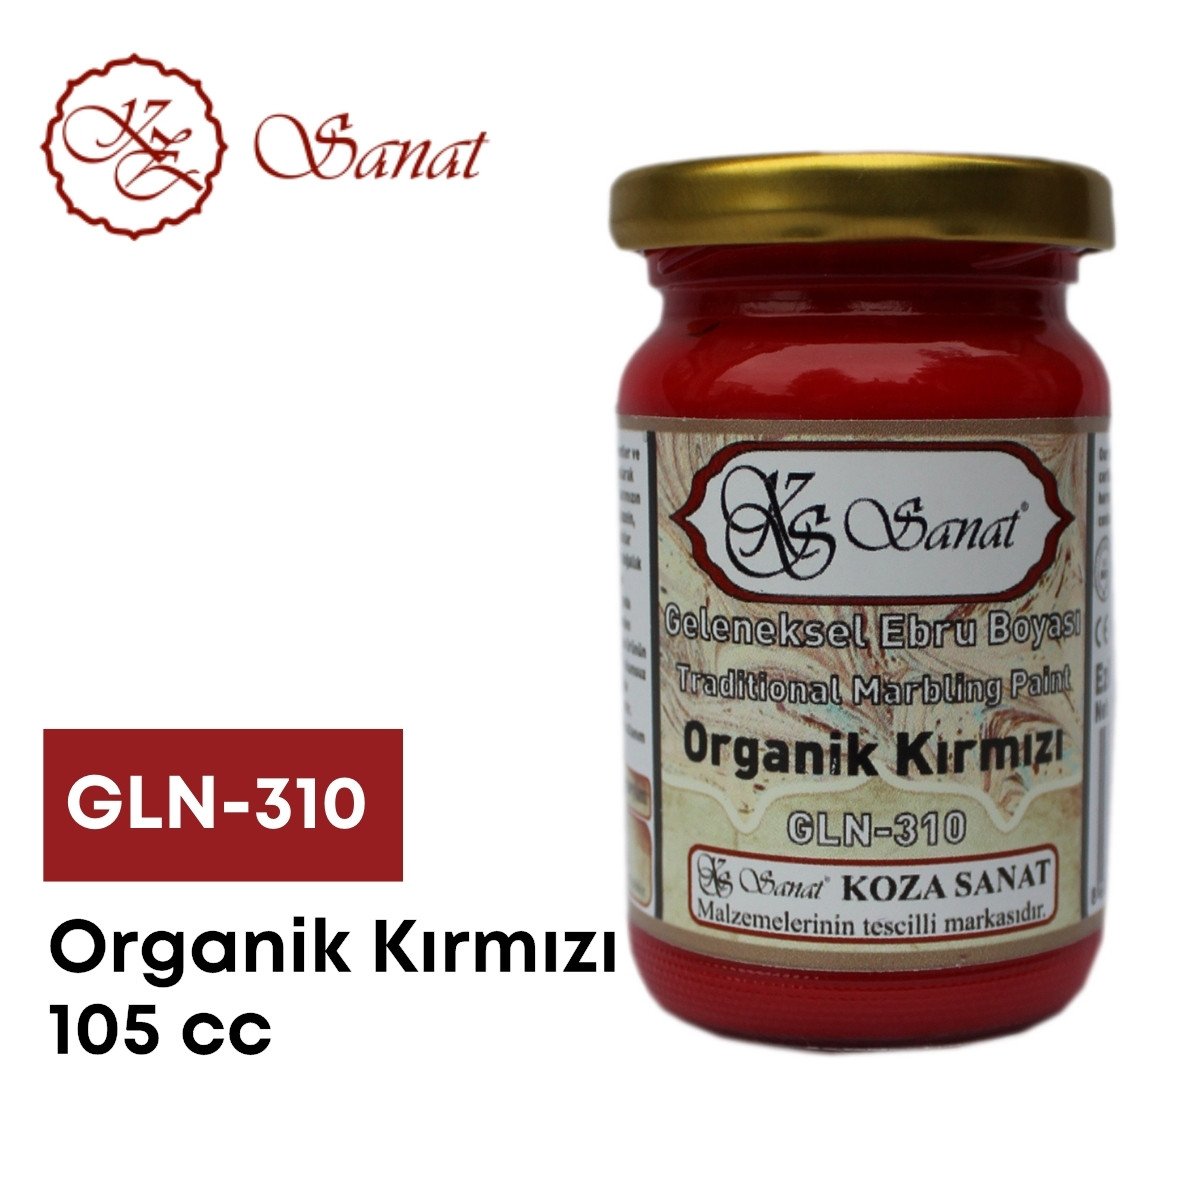 Koza Sanat Geleneksel Ebru Boyası 105cc GLN-310 Organik Kırmızı